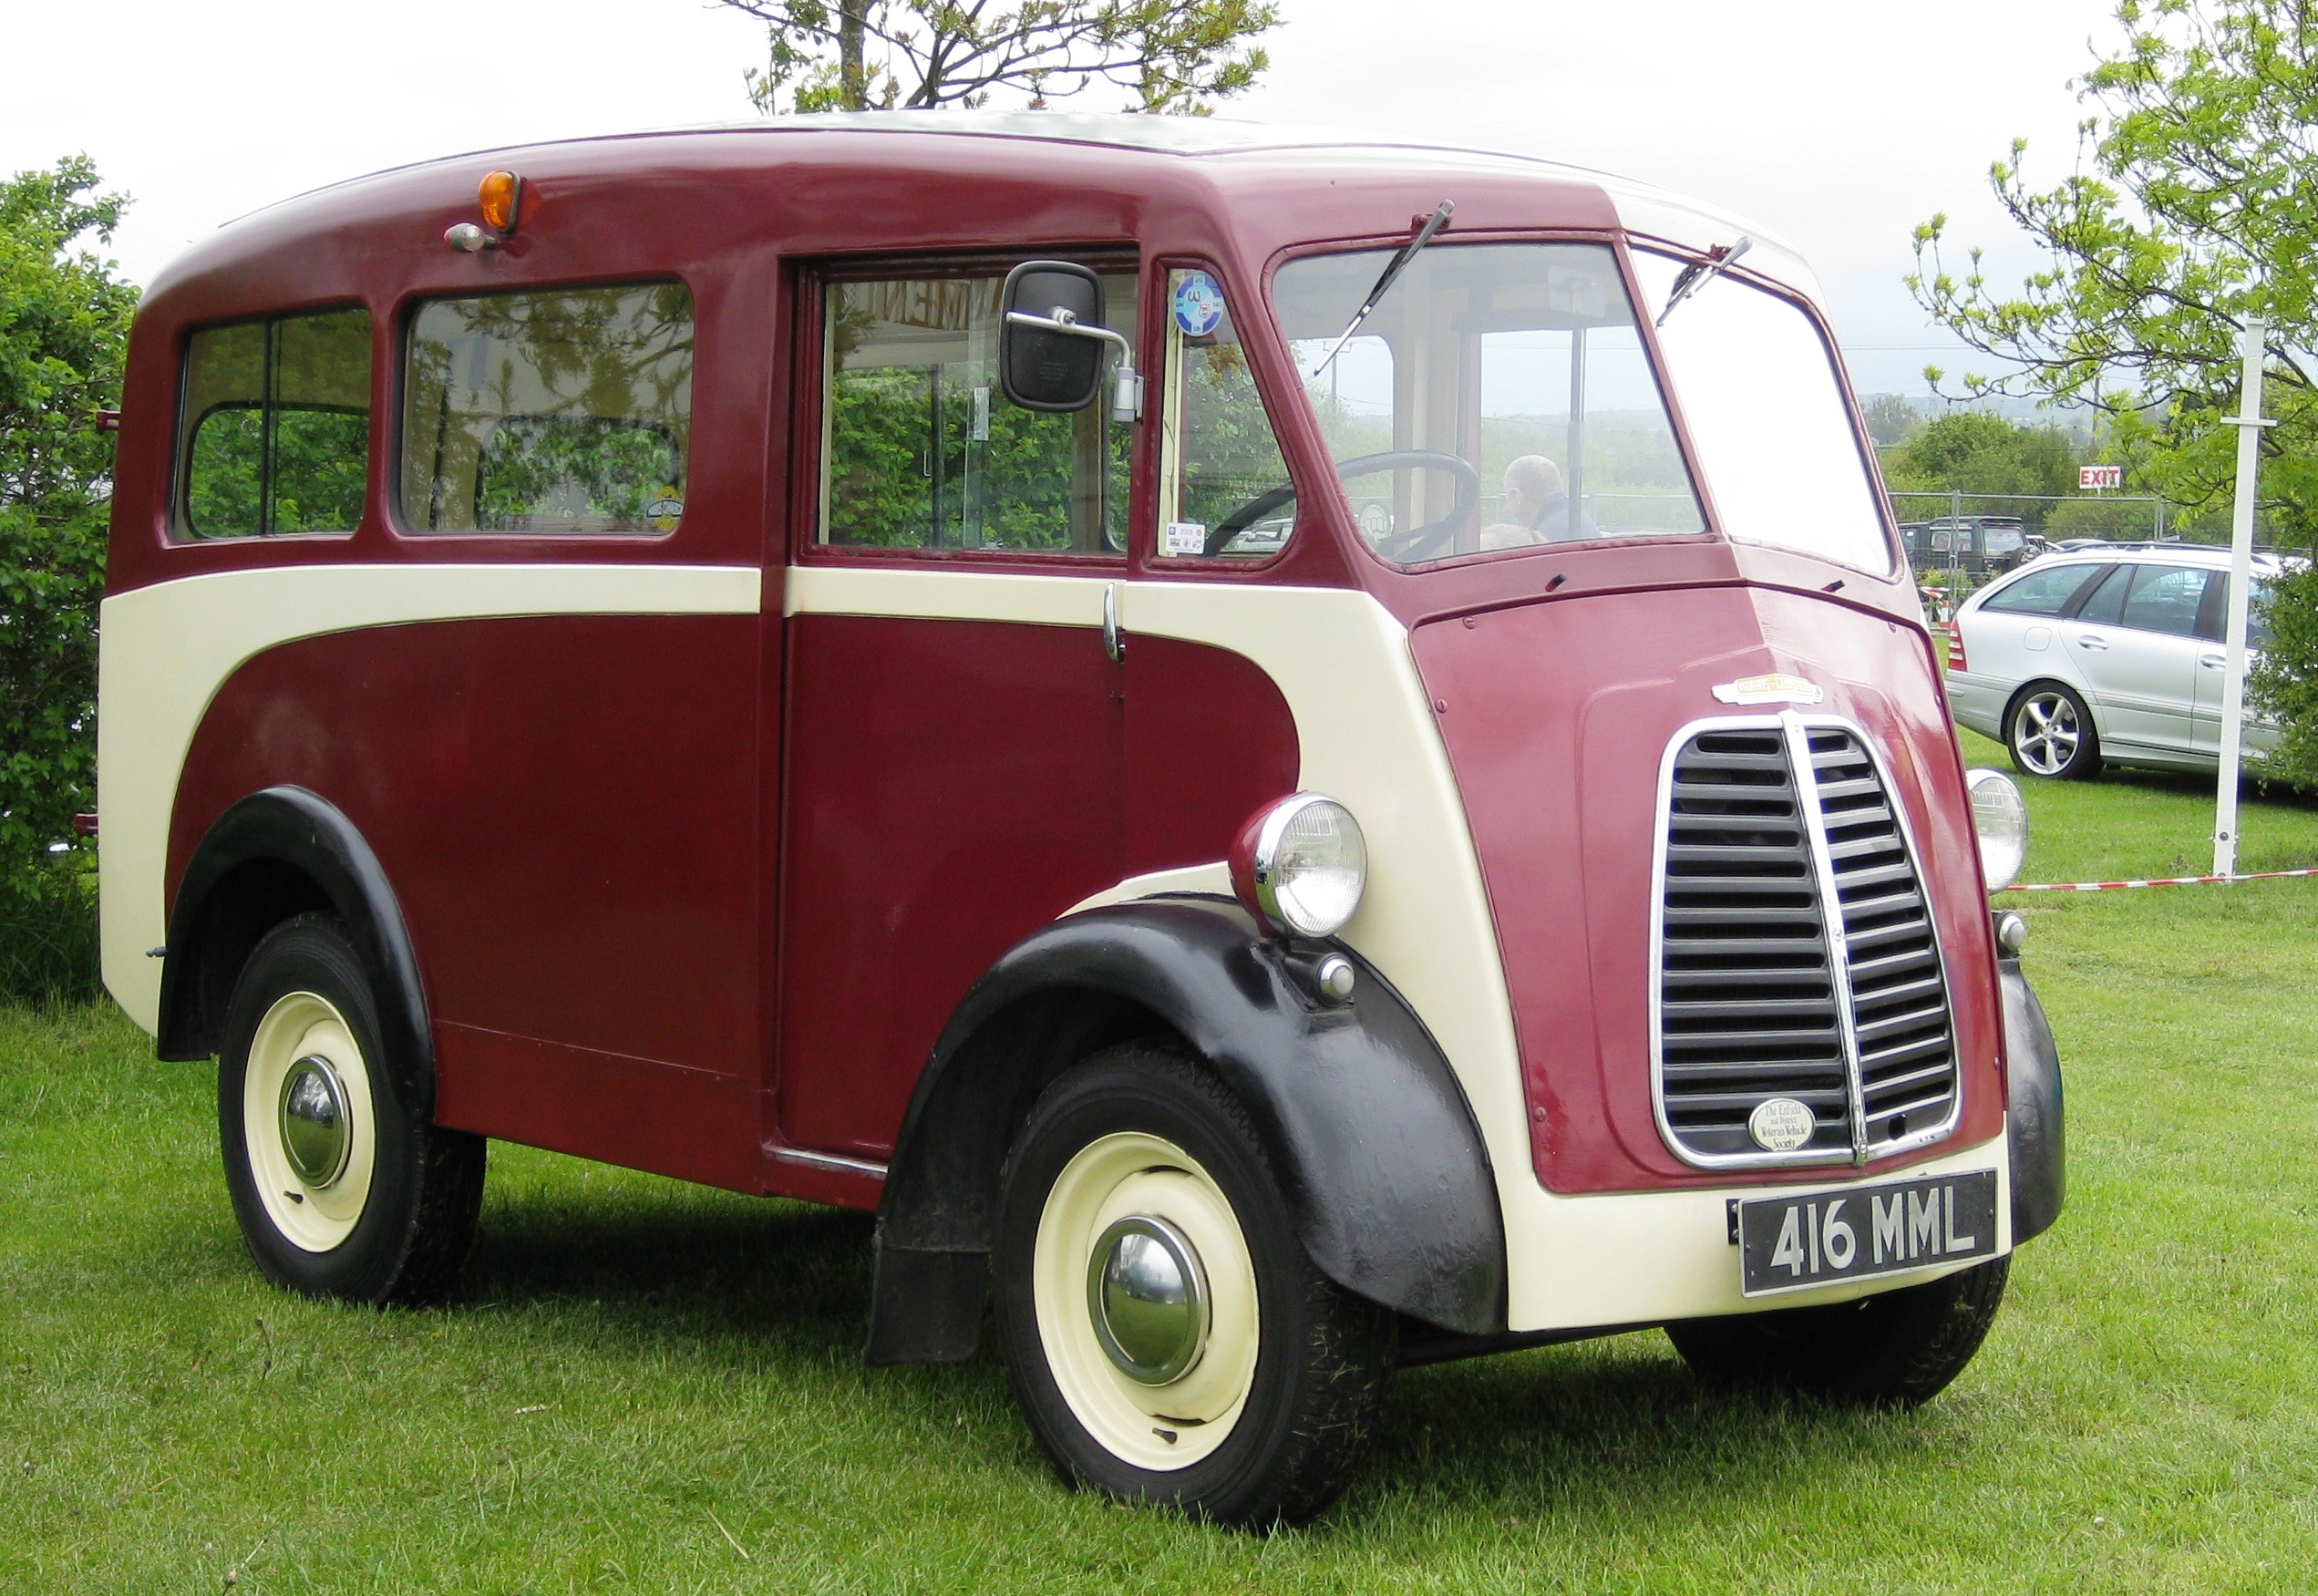 File:Morris J-Type van with side windows ca 1951 Battlesbridge.JPG ...